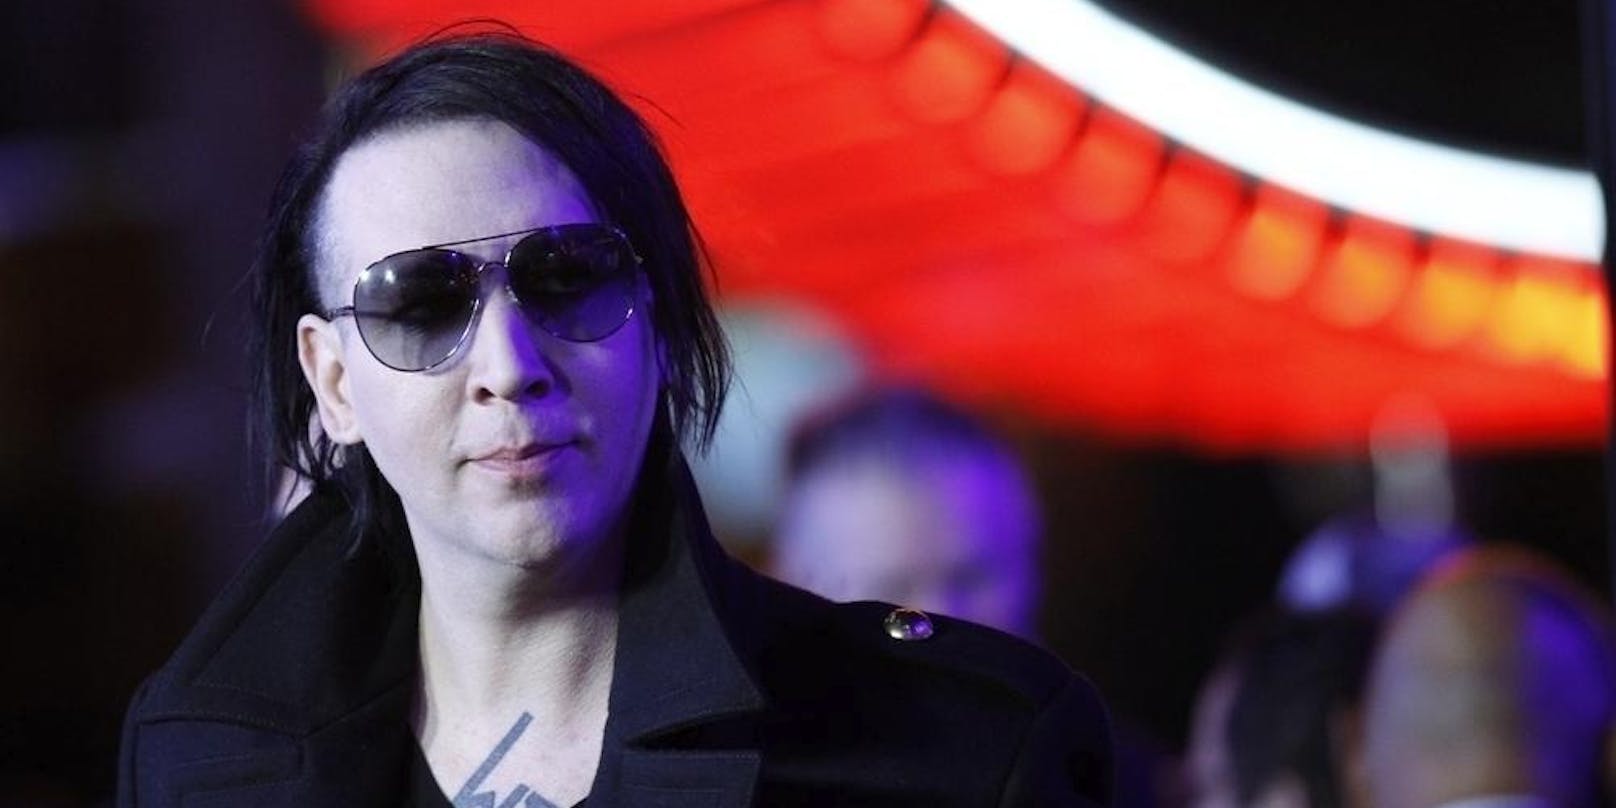 Die Polizei von Los Angeles hat Ermittlungen gegen <strong>Marilyn Manson</strong> (52) eingeleitet. Dies, nachdem in den vergangenen Wochen Missbrauchsvorwürfe gegen den Musiker laut wurden.